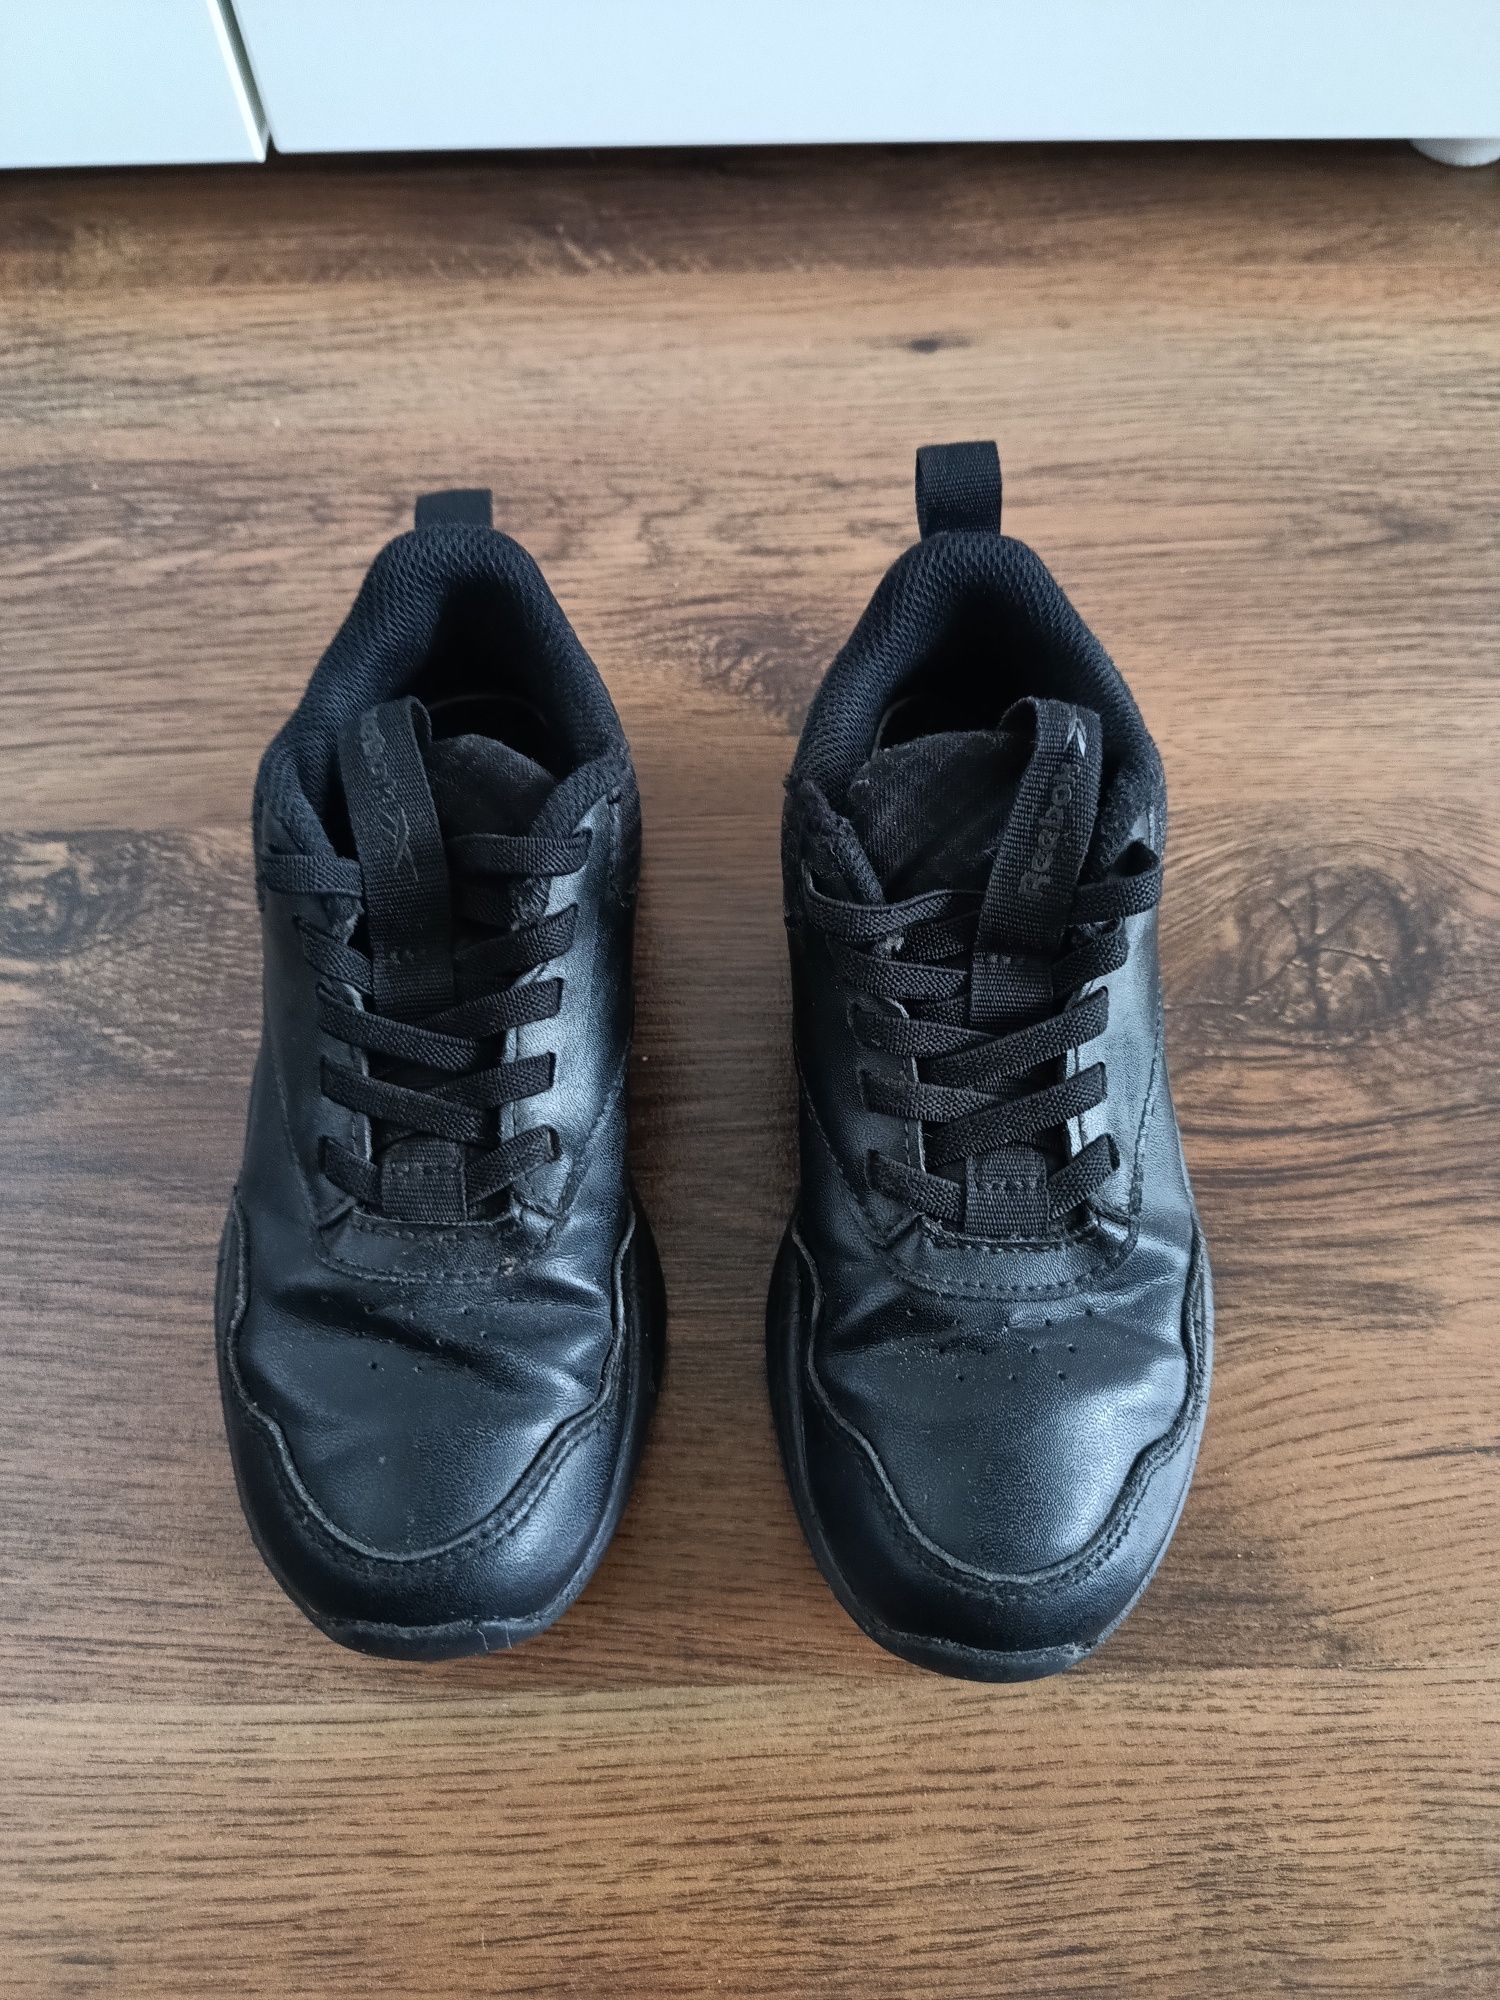 Reebok buty wkładka 20,5 cm, rozmiar 31 w kolorze czarnym Poznań